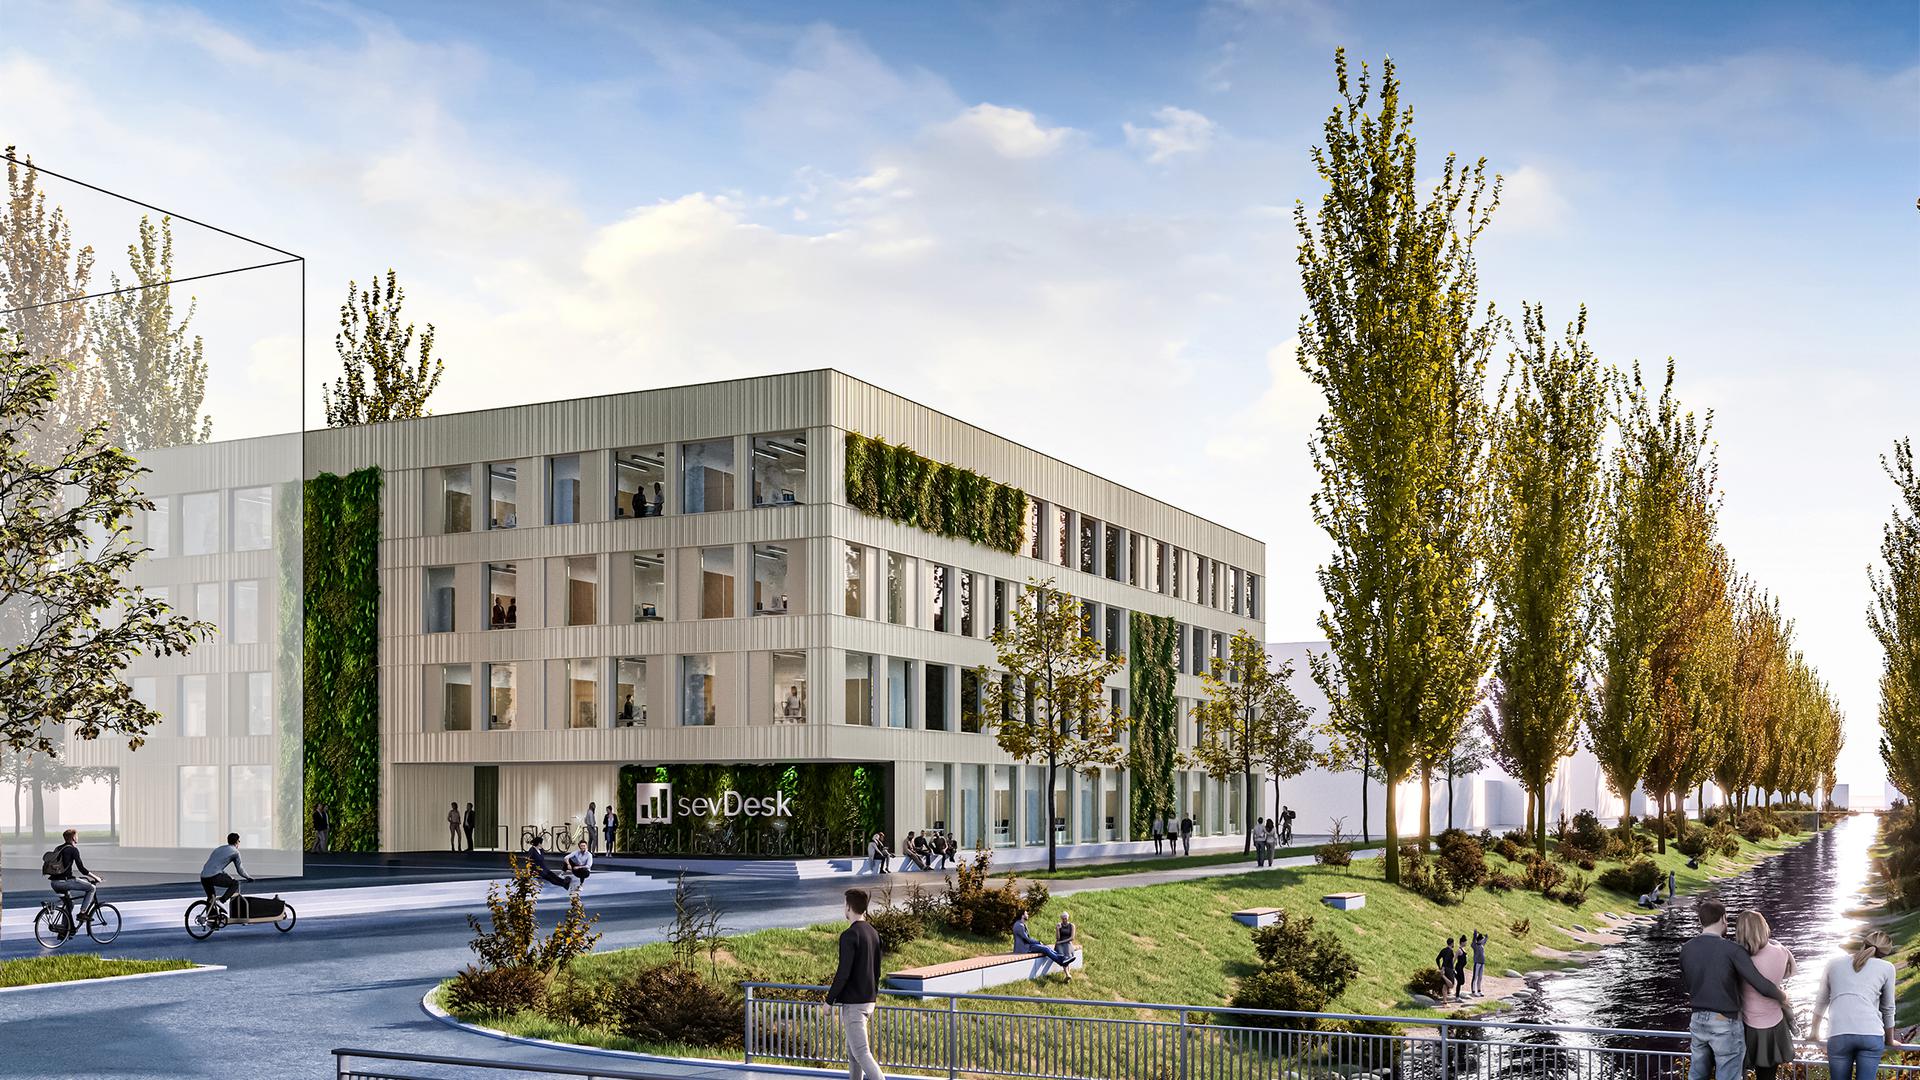 Projektion: So wird das neue Sevdesk-Gebäude in Offenburg aussehen. Der Einzug ist für Herbst 2023 geplant.